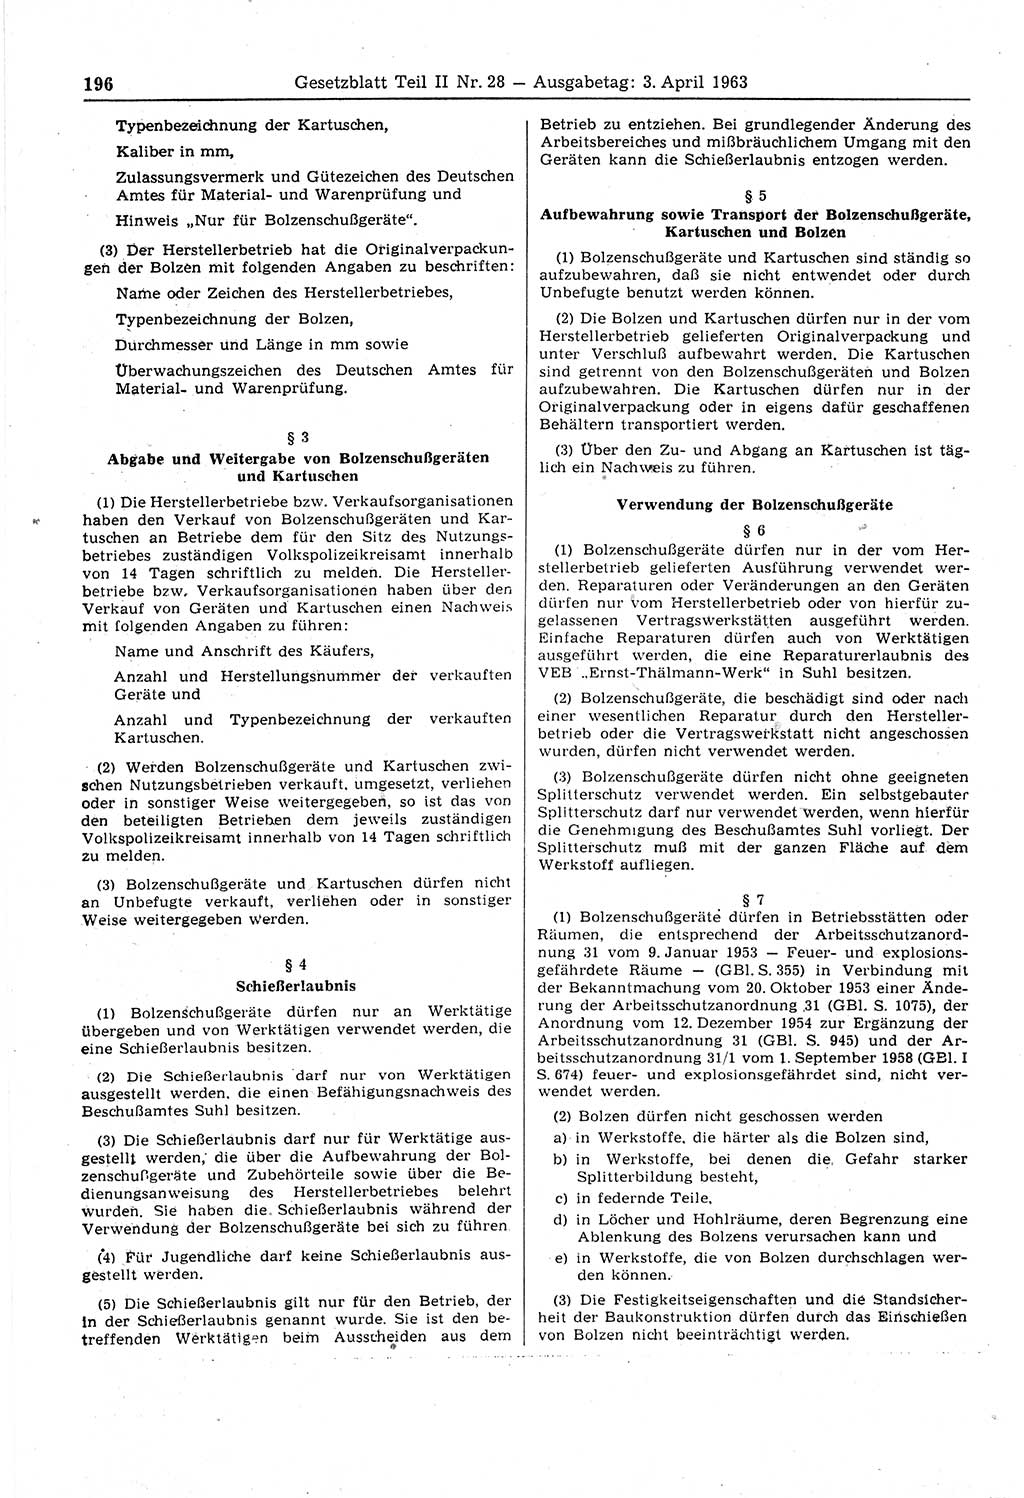 Gesetzblatt (GBl.) der Deutschen Demokratischen Republik (DDR) Teil ⅠⅠ 1963, Seite 196 (GBl. DDR ⅠⅠ 1963, S. 196)